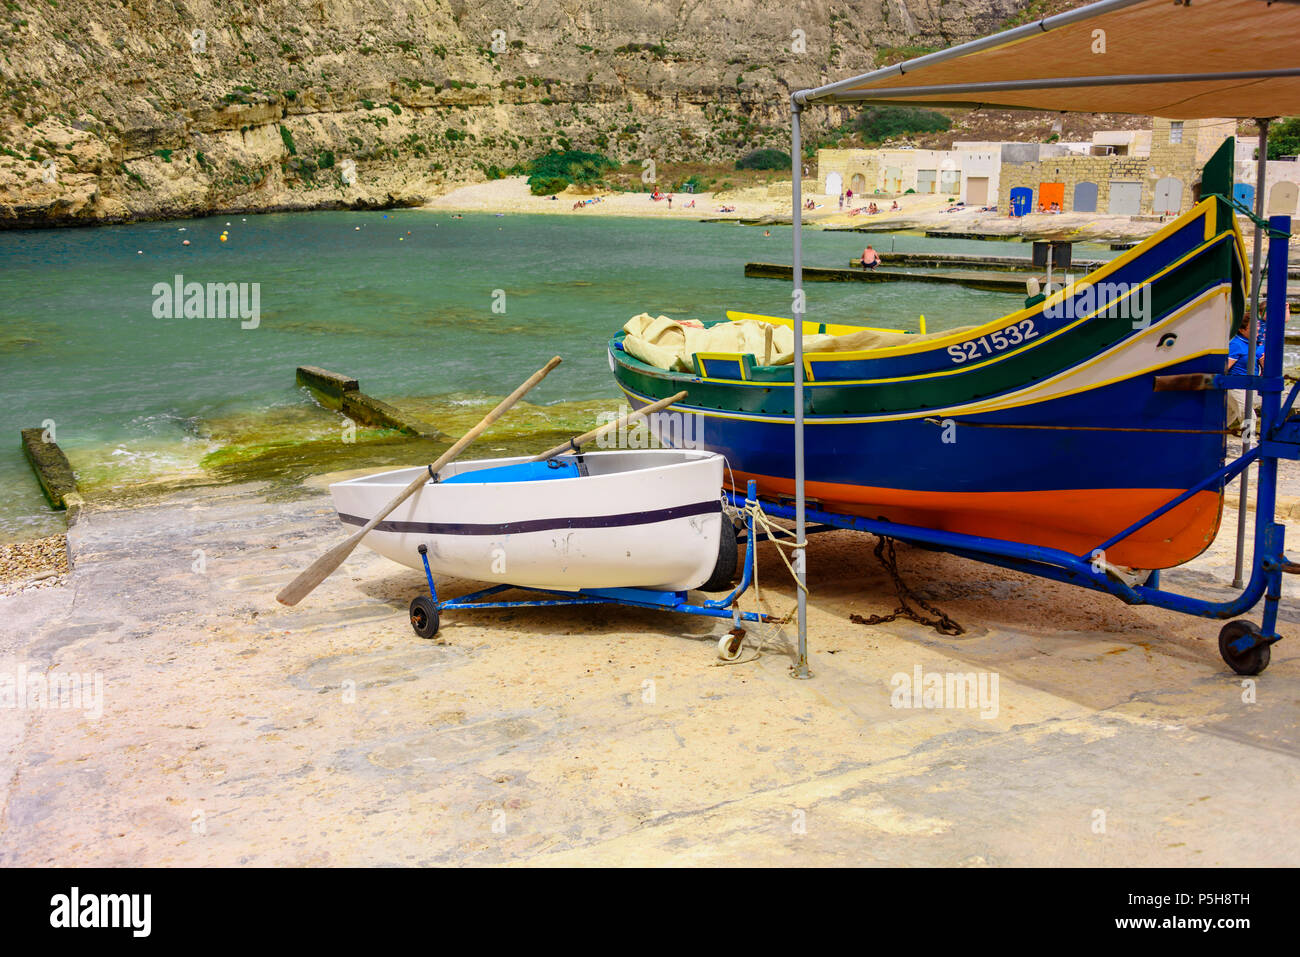 Un bateau de clinker traditionnelle maltaise à Dwerja, la mer intérieure, Gozo, Malte Banque D'Images